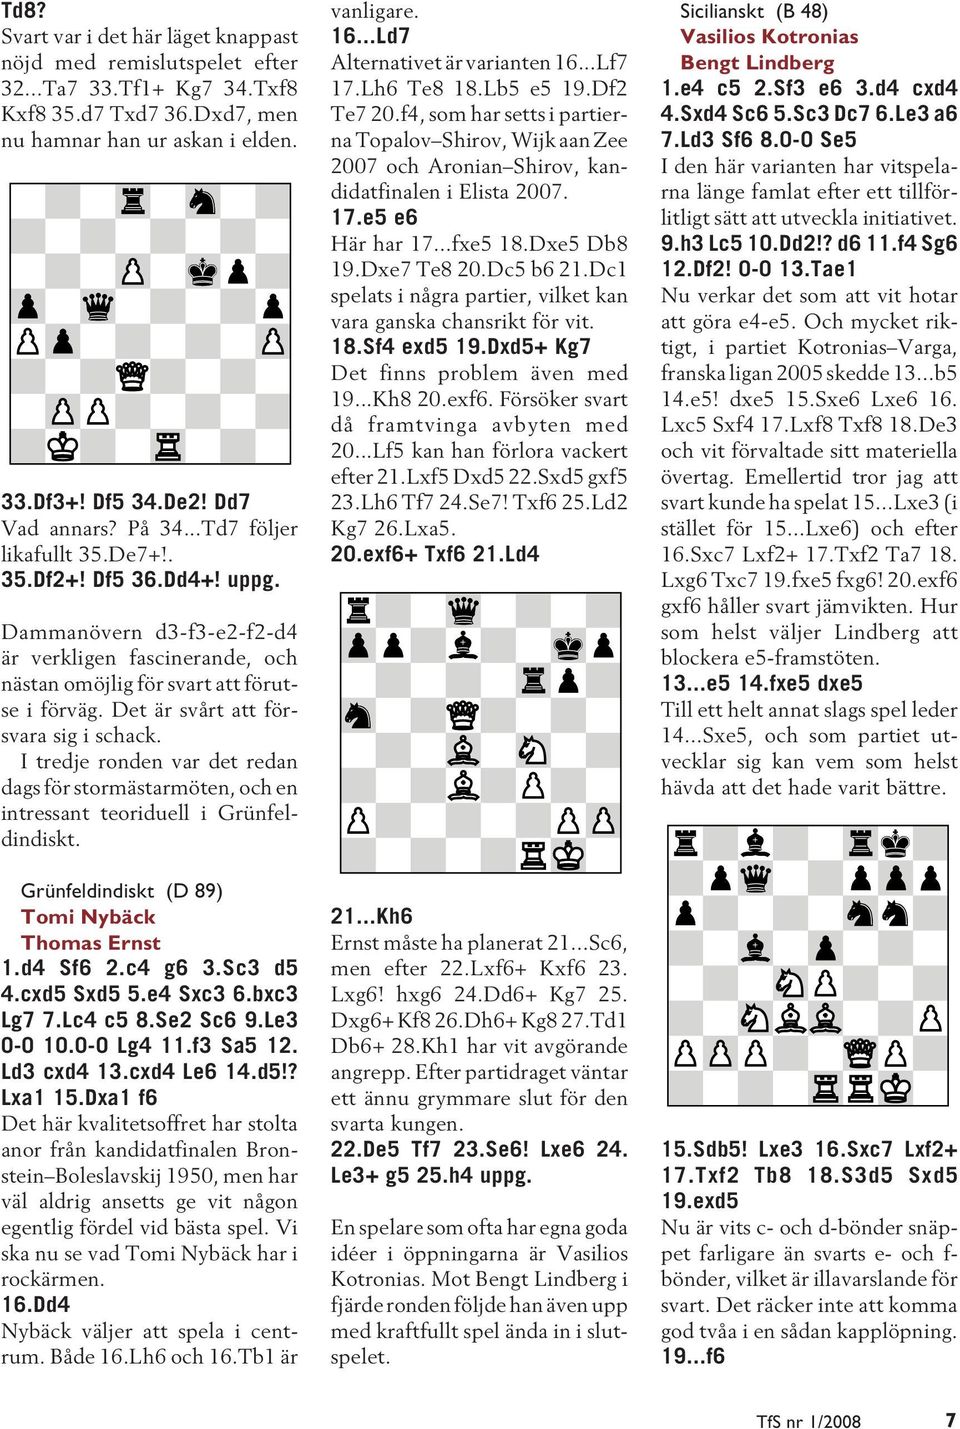 Det är svårt att försvara sig i schack. I tredje ronden var det redan dags för stormästarmöten, och en intressant teoriduell i Grünfeldindiskt. Grünfeldindiskt (D 89) Tomi Nybäck Thomas Ernst 1.